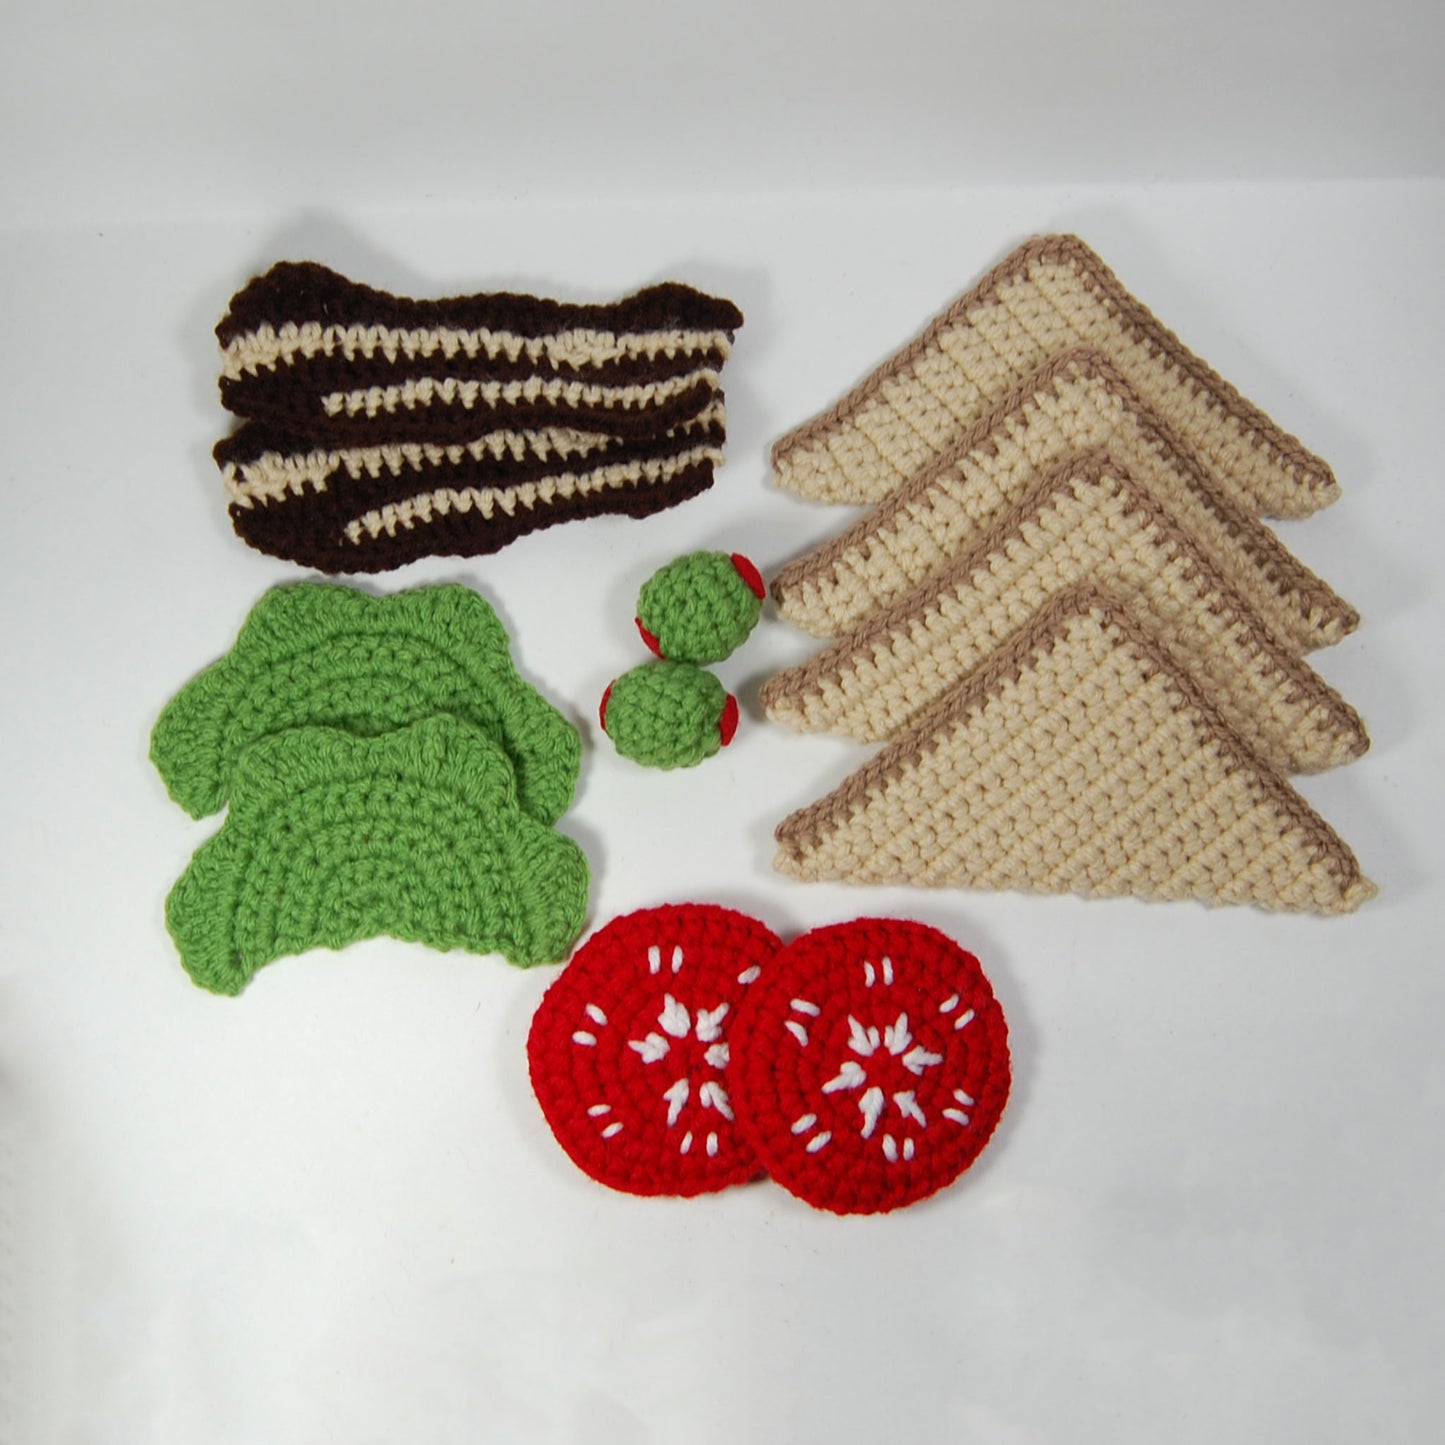 BLT Sandwich Crochet Pattern